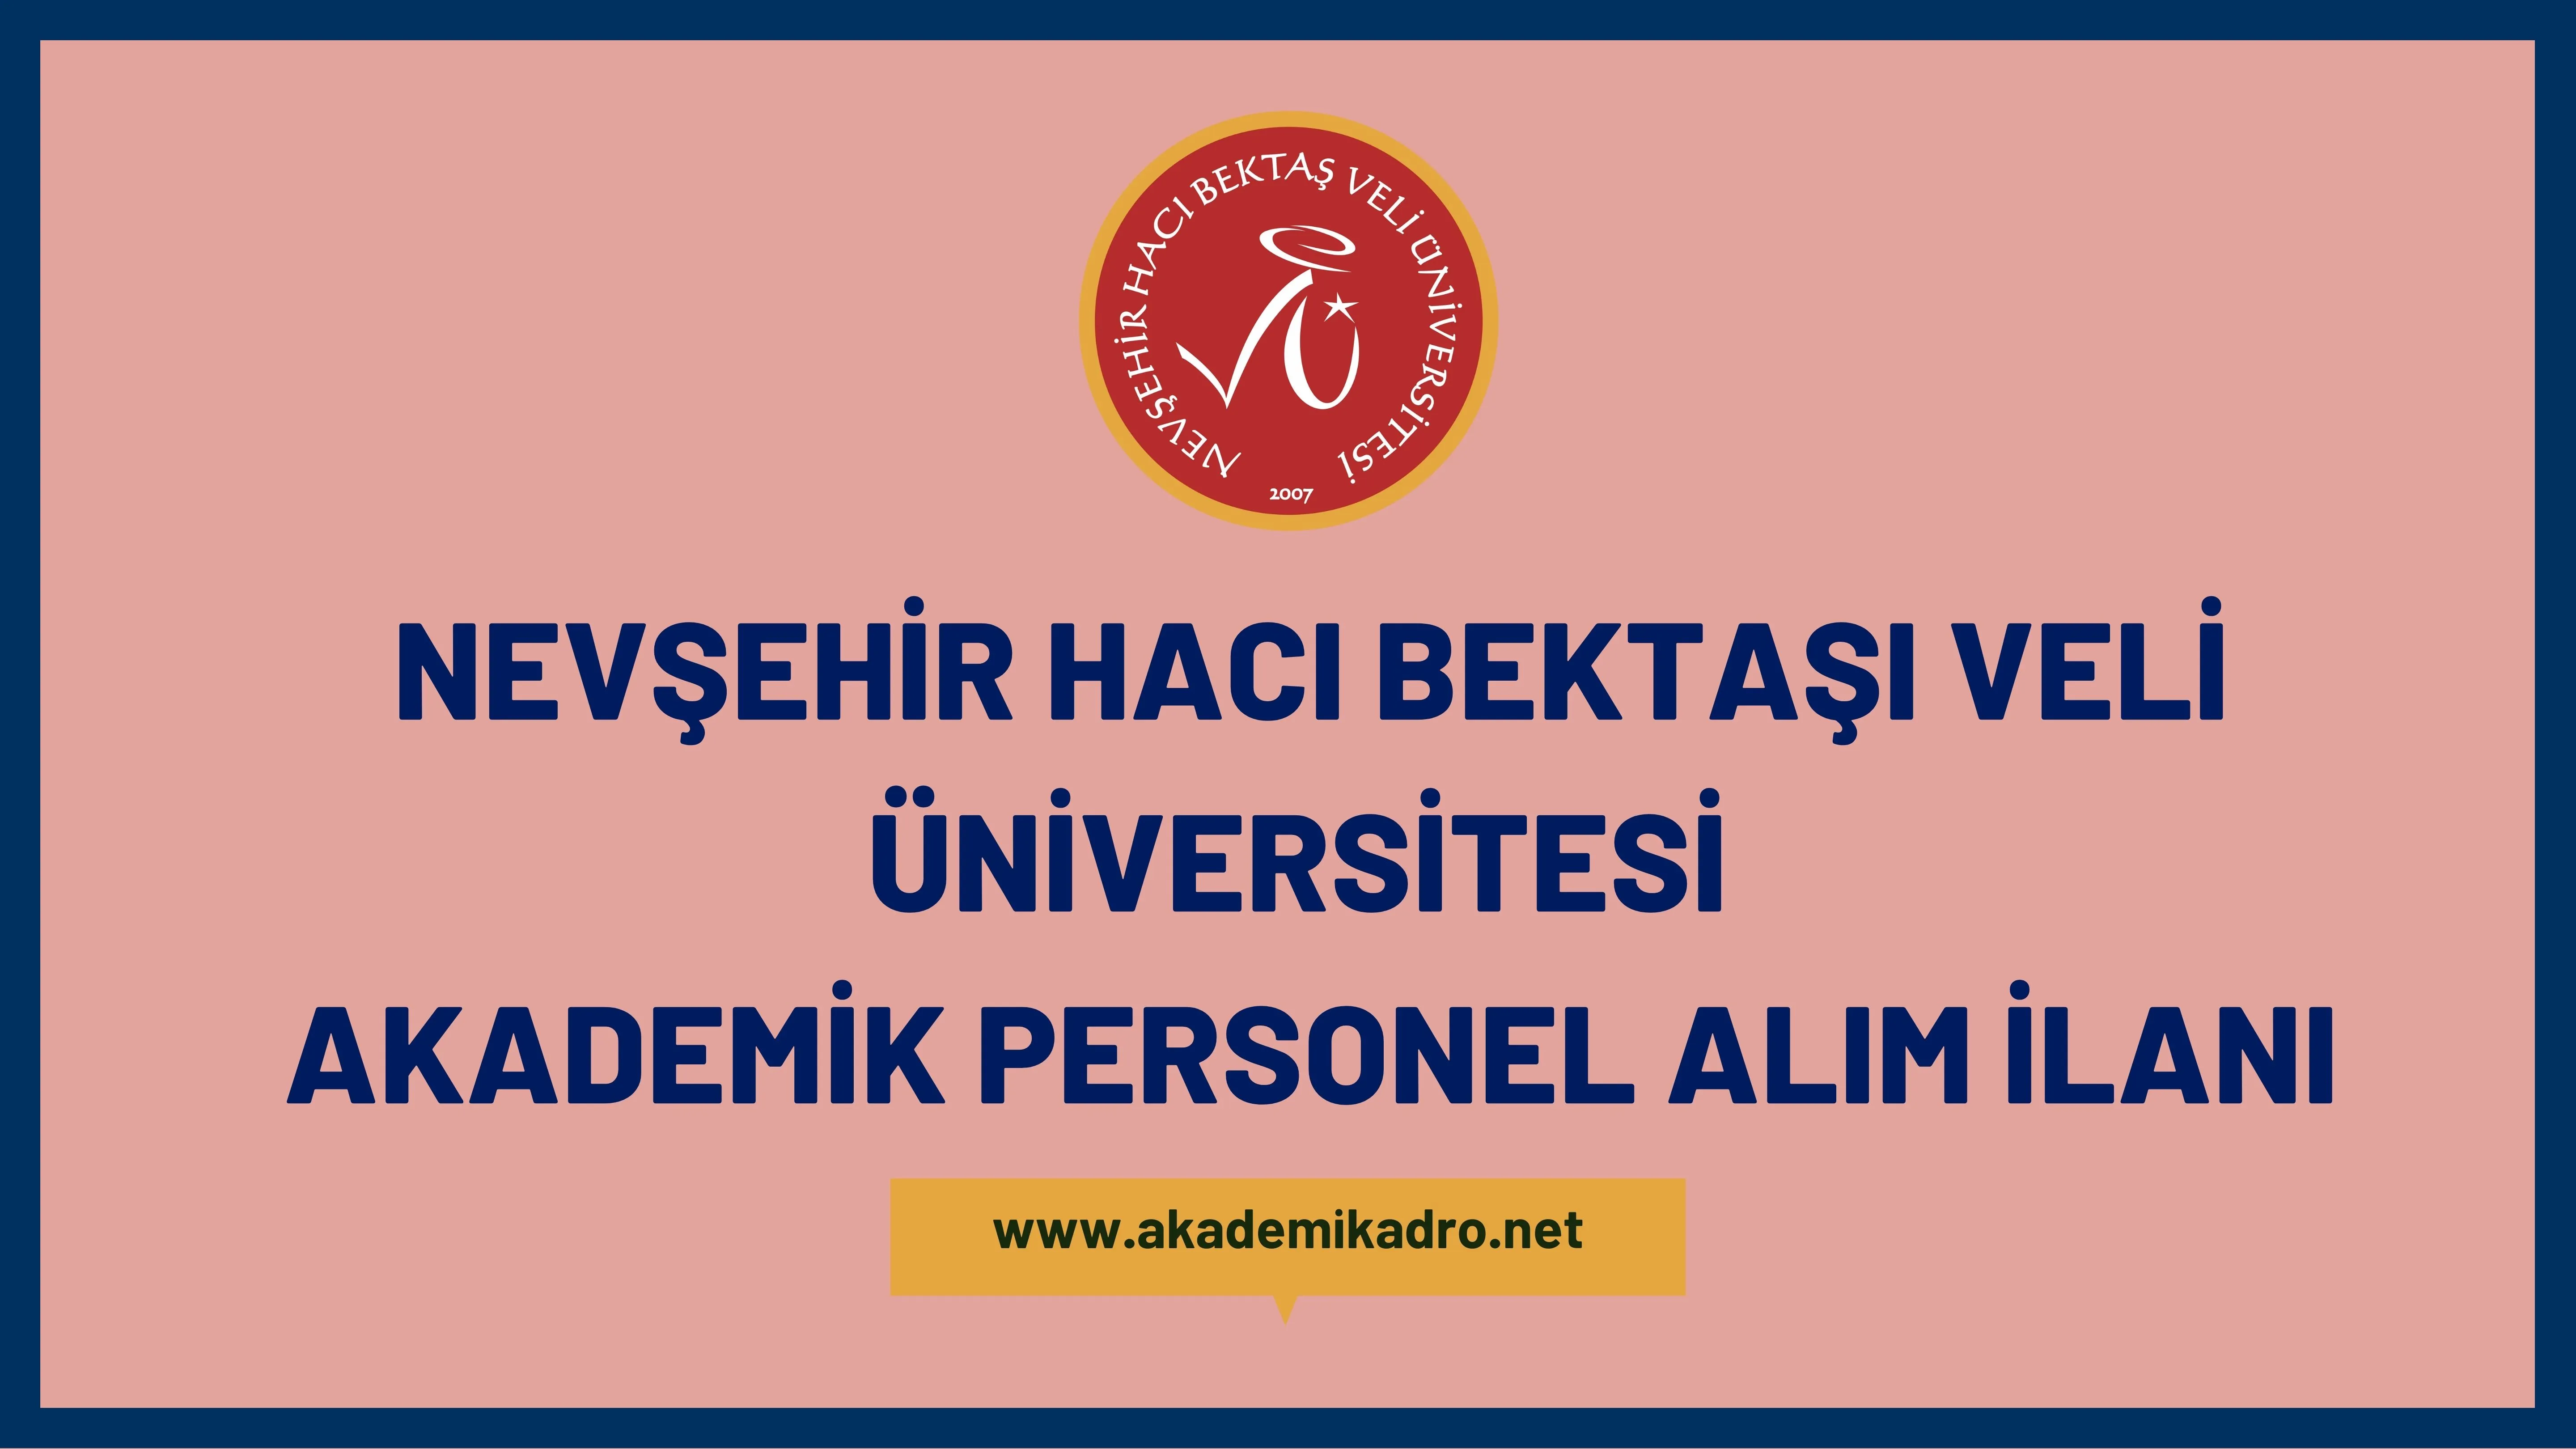 Nevşehir Hacı Bektaş Veli Üniversitesi birçok alandan 34 akademik personel alacak.